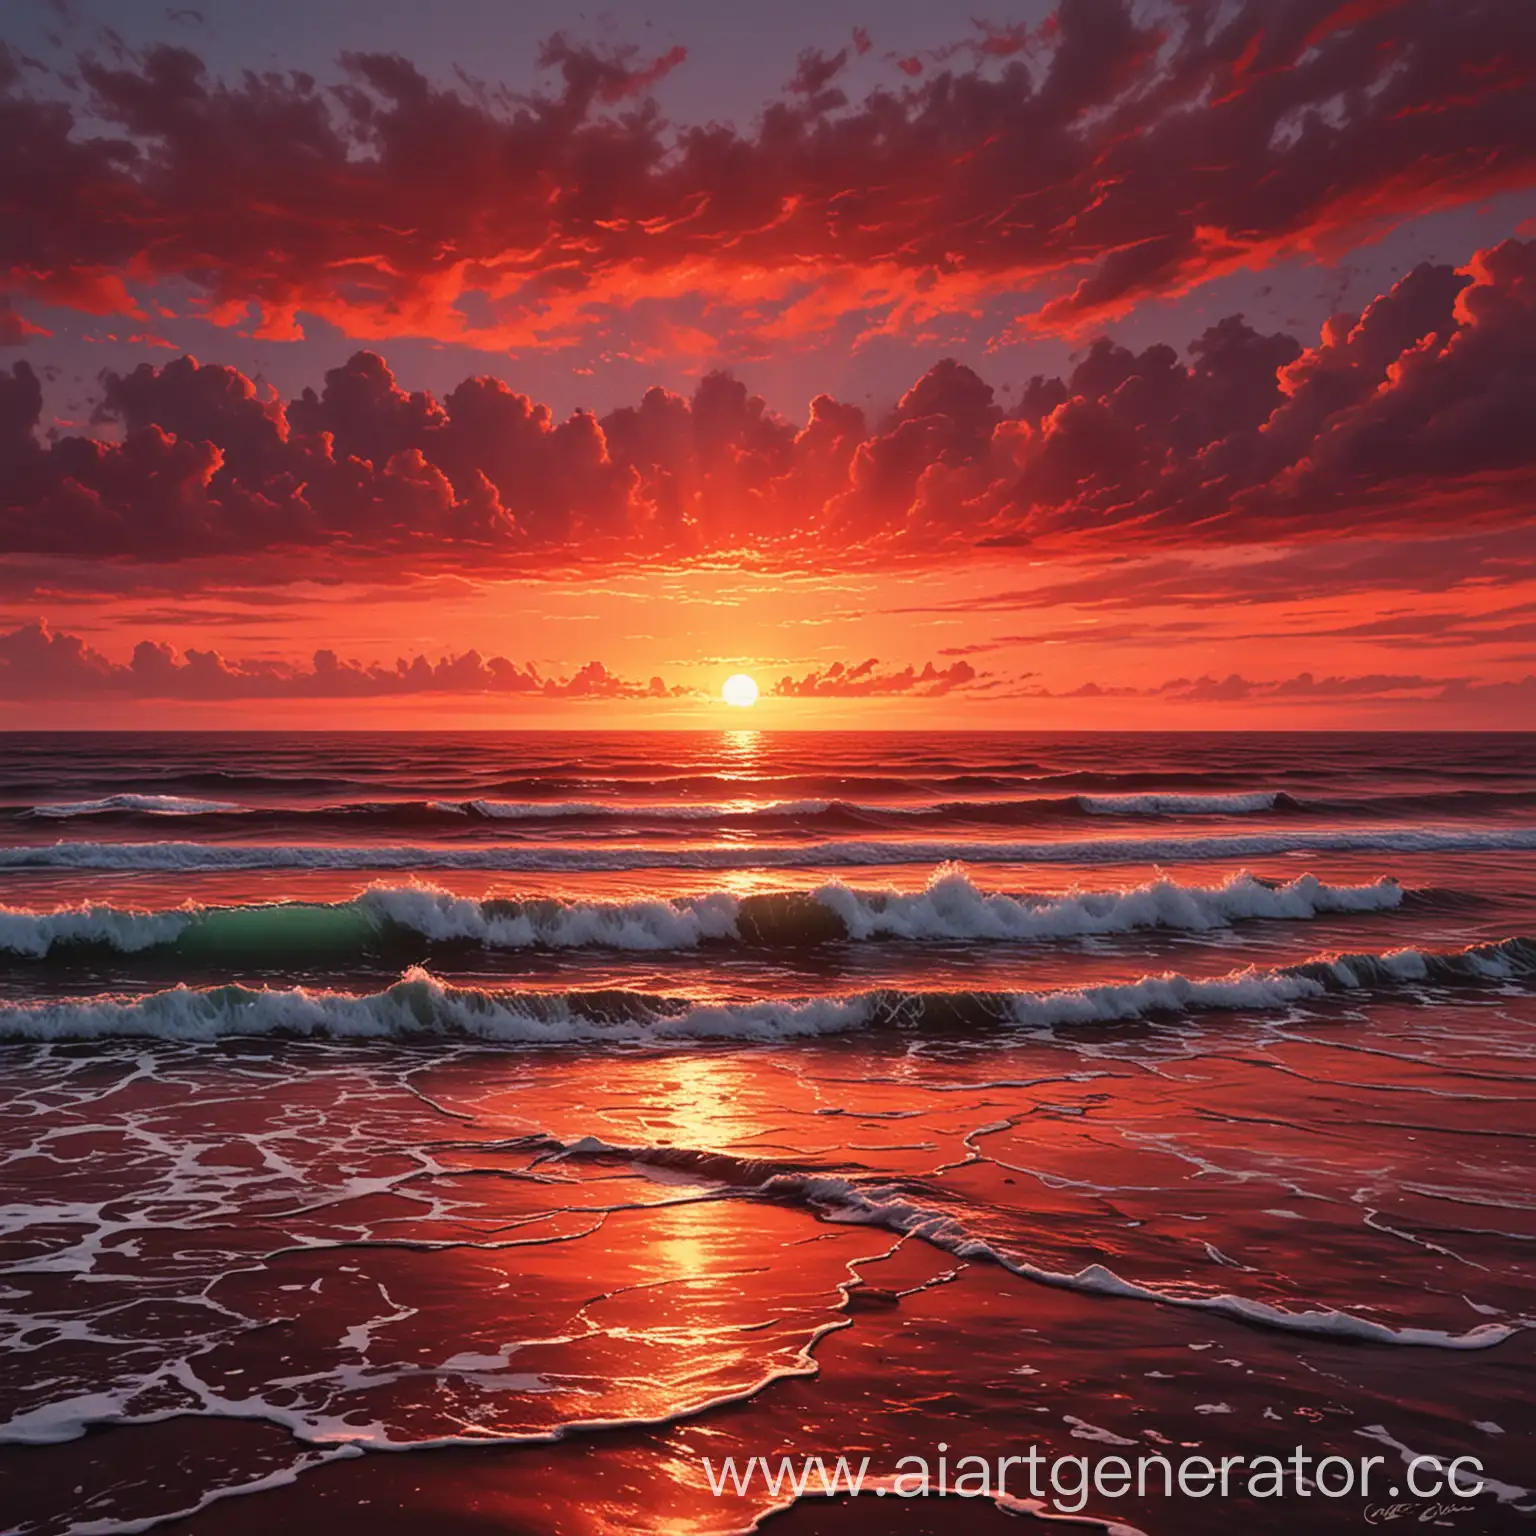 Crimson-Sunset-Over-the-Ocean